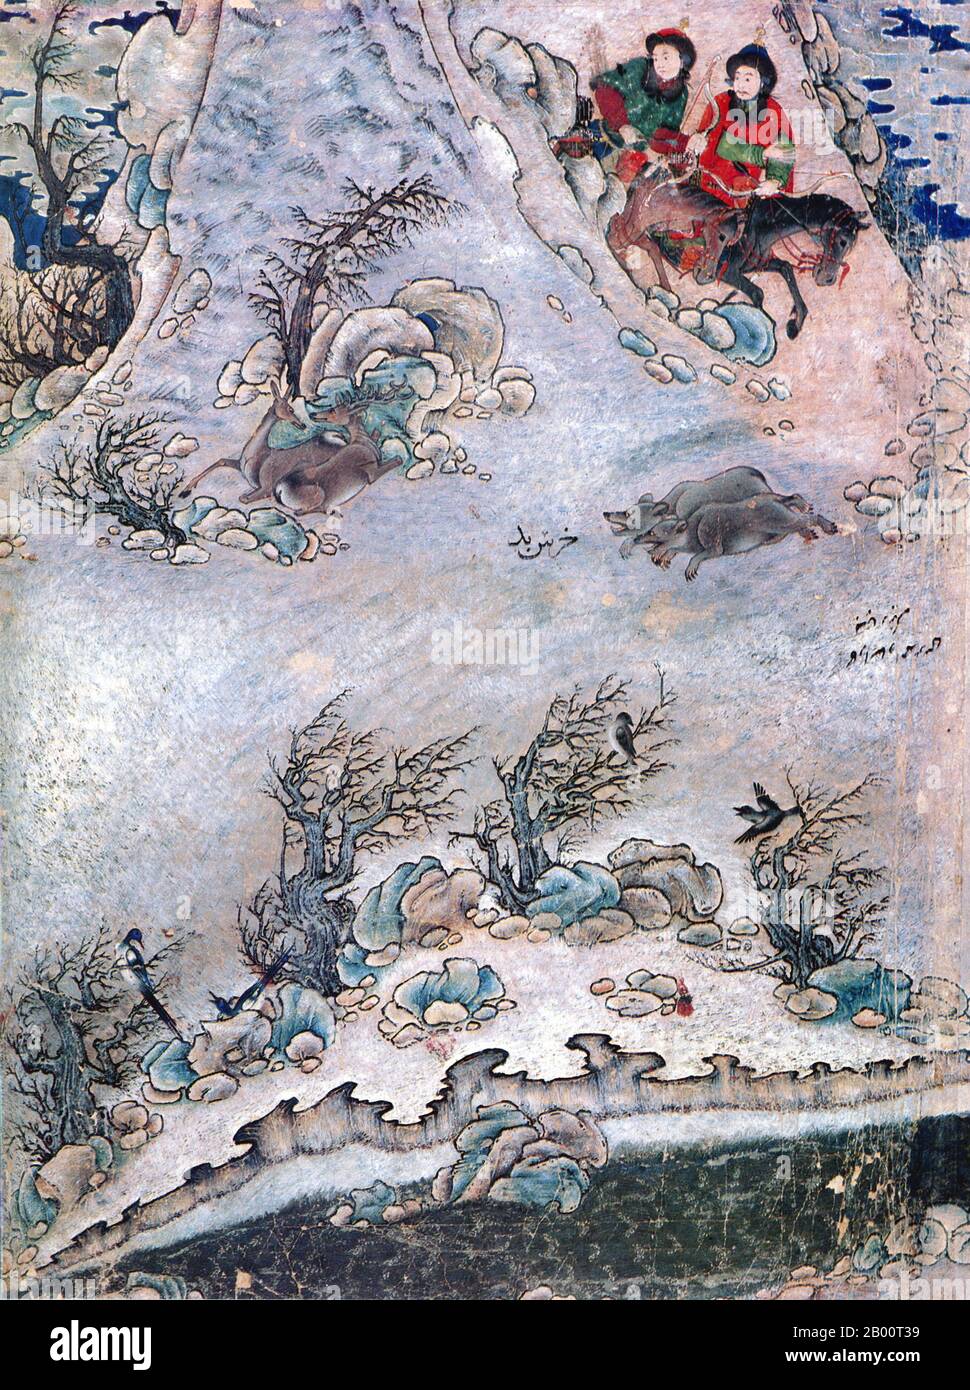 Zentralasien: Zwei Reiter jagen im Schnee in Zentralasien, 15. Jahrhundert. Gemälde aus der Schule von Siyah Kalem. Mehmed Siyah-Kalem war ein Künstler des 15. Jahrhunderts, der allein durch die Namenszuschreibung einer bemerkenswerten Serie von Gemälden bekannt war, die in der kaiserlichen osmanischen Palastbibliothek (Topkapi Saray) aufbewahrt wurden. Von seinem Leben ist nichts bekannt, aber seine Arbeit deutet darauf hin, dass er zentralasiatischer (vermutlich türkischer) Herkunft war, wahrscheinlich aus dem Iran oder Turkestan, und mit dem Lager- und Militärleben bestens vertraut war. Seine Bilder erscheinen in den ‘Conqueror’s Albums’. Stockfoto